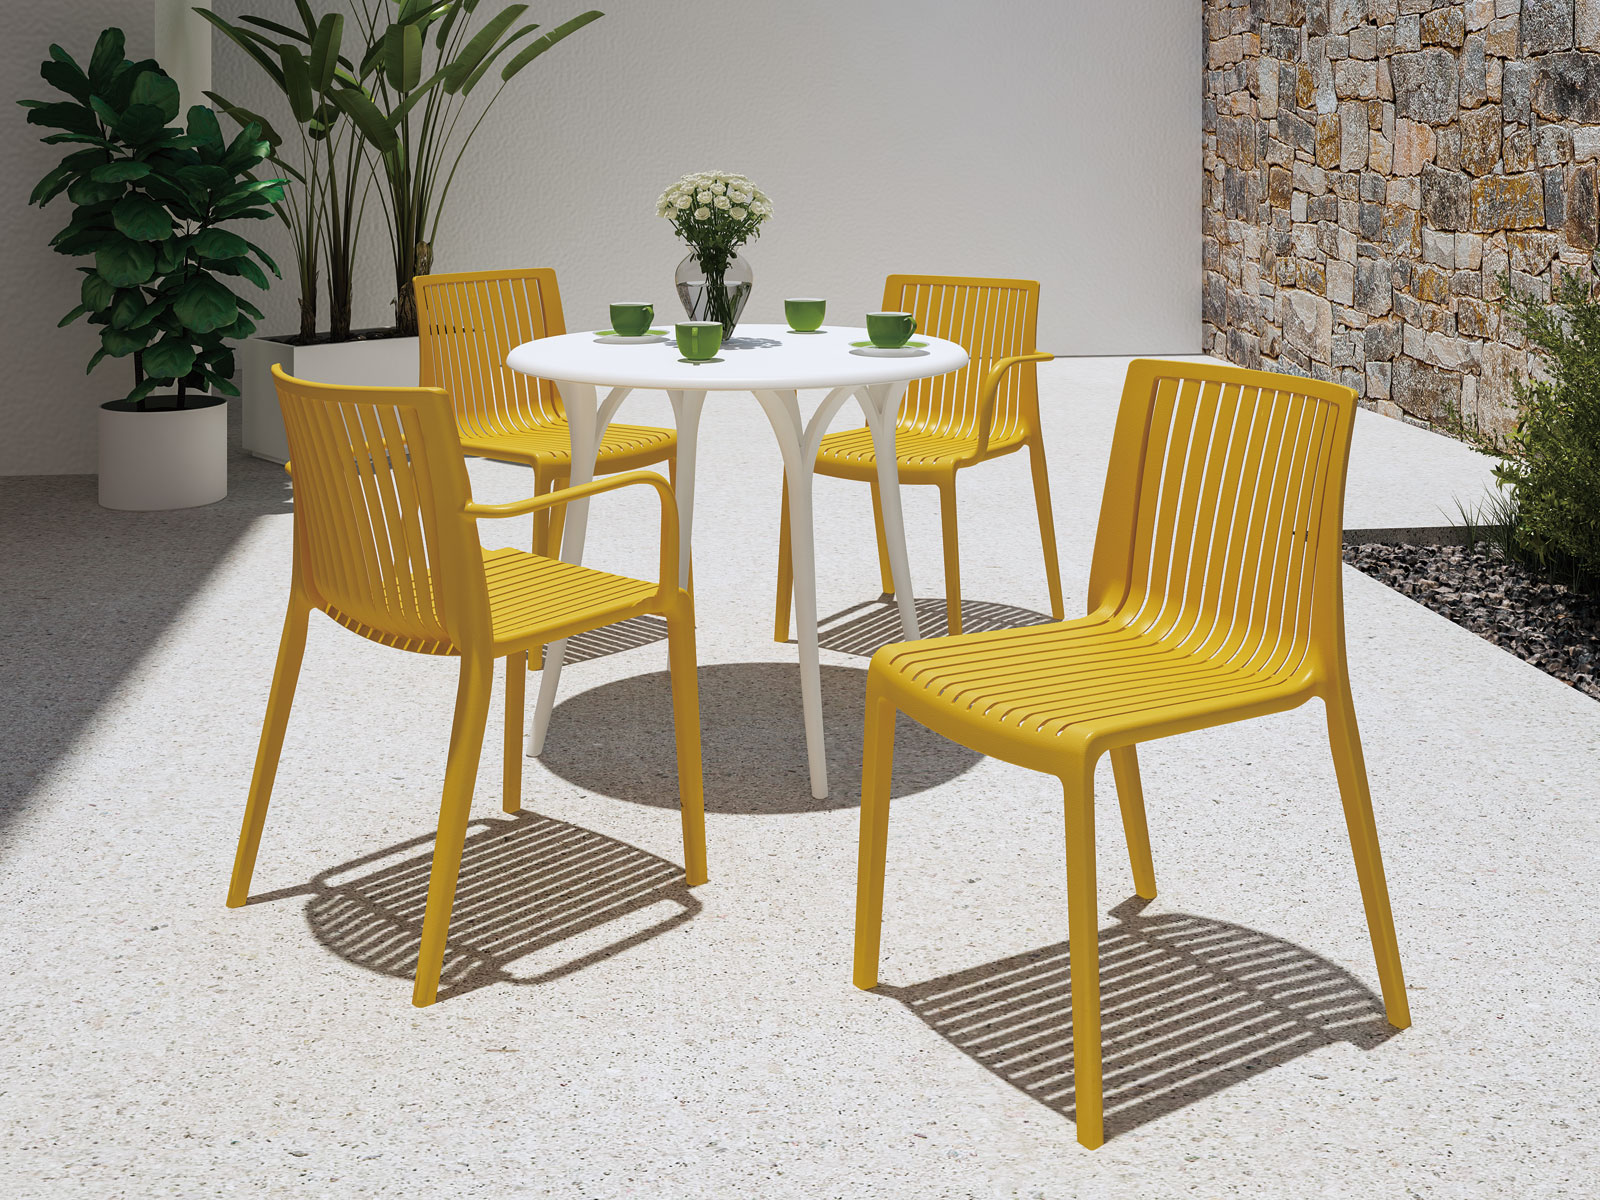 7203B-PT1 Milos米洛斯餐椅 - Lagoon 創意家具&生活家電 戶外家具的專家，顏色繽紛富設計感 室內/戶外都適合使用。